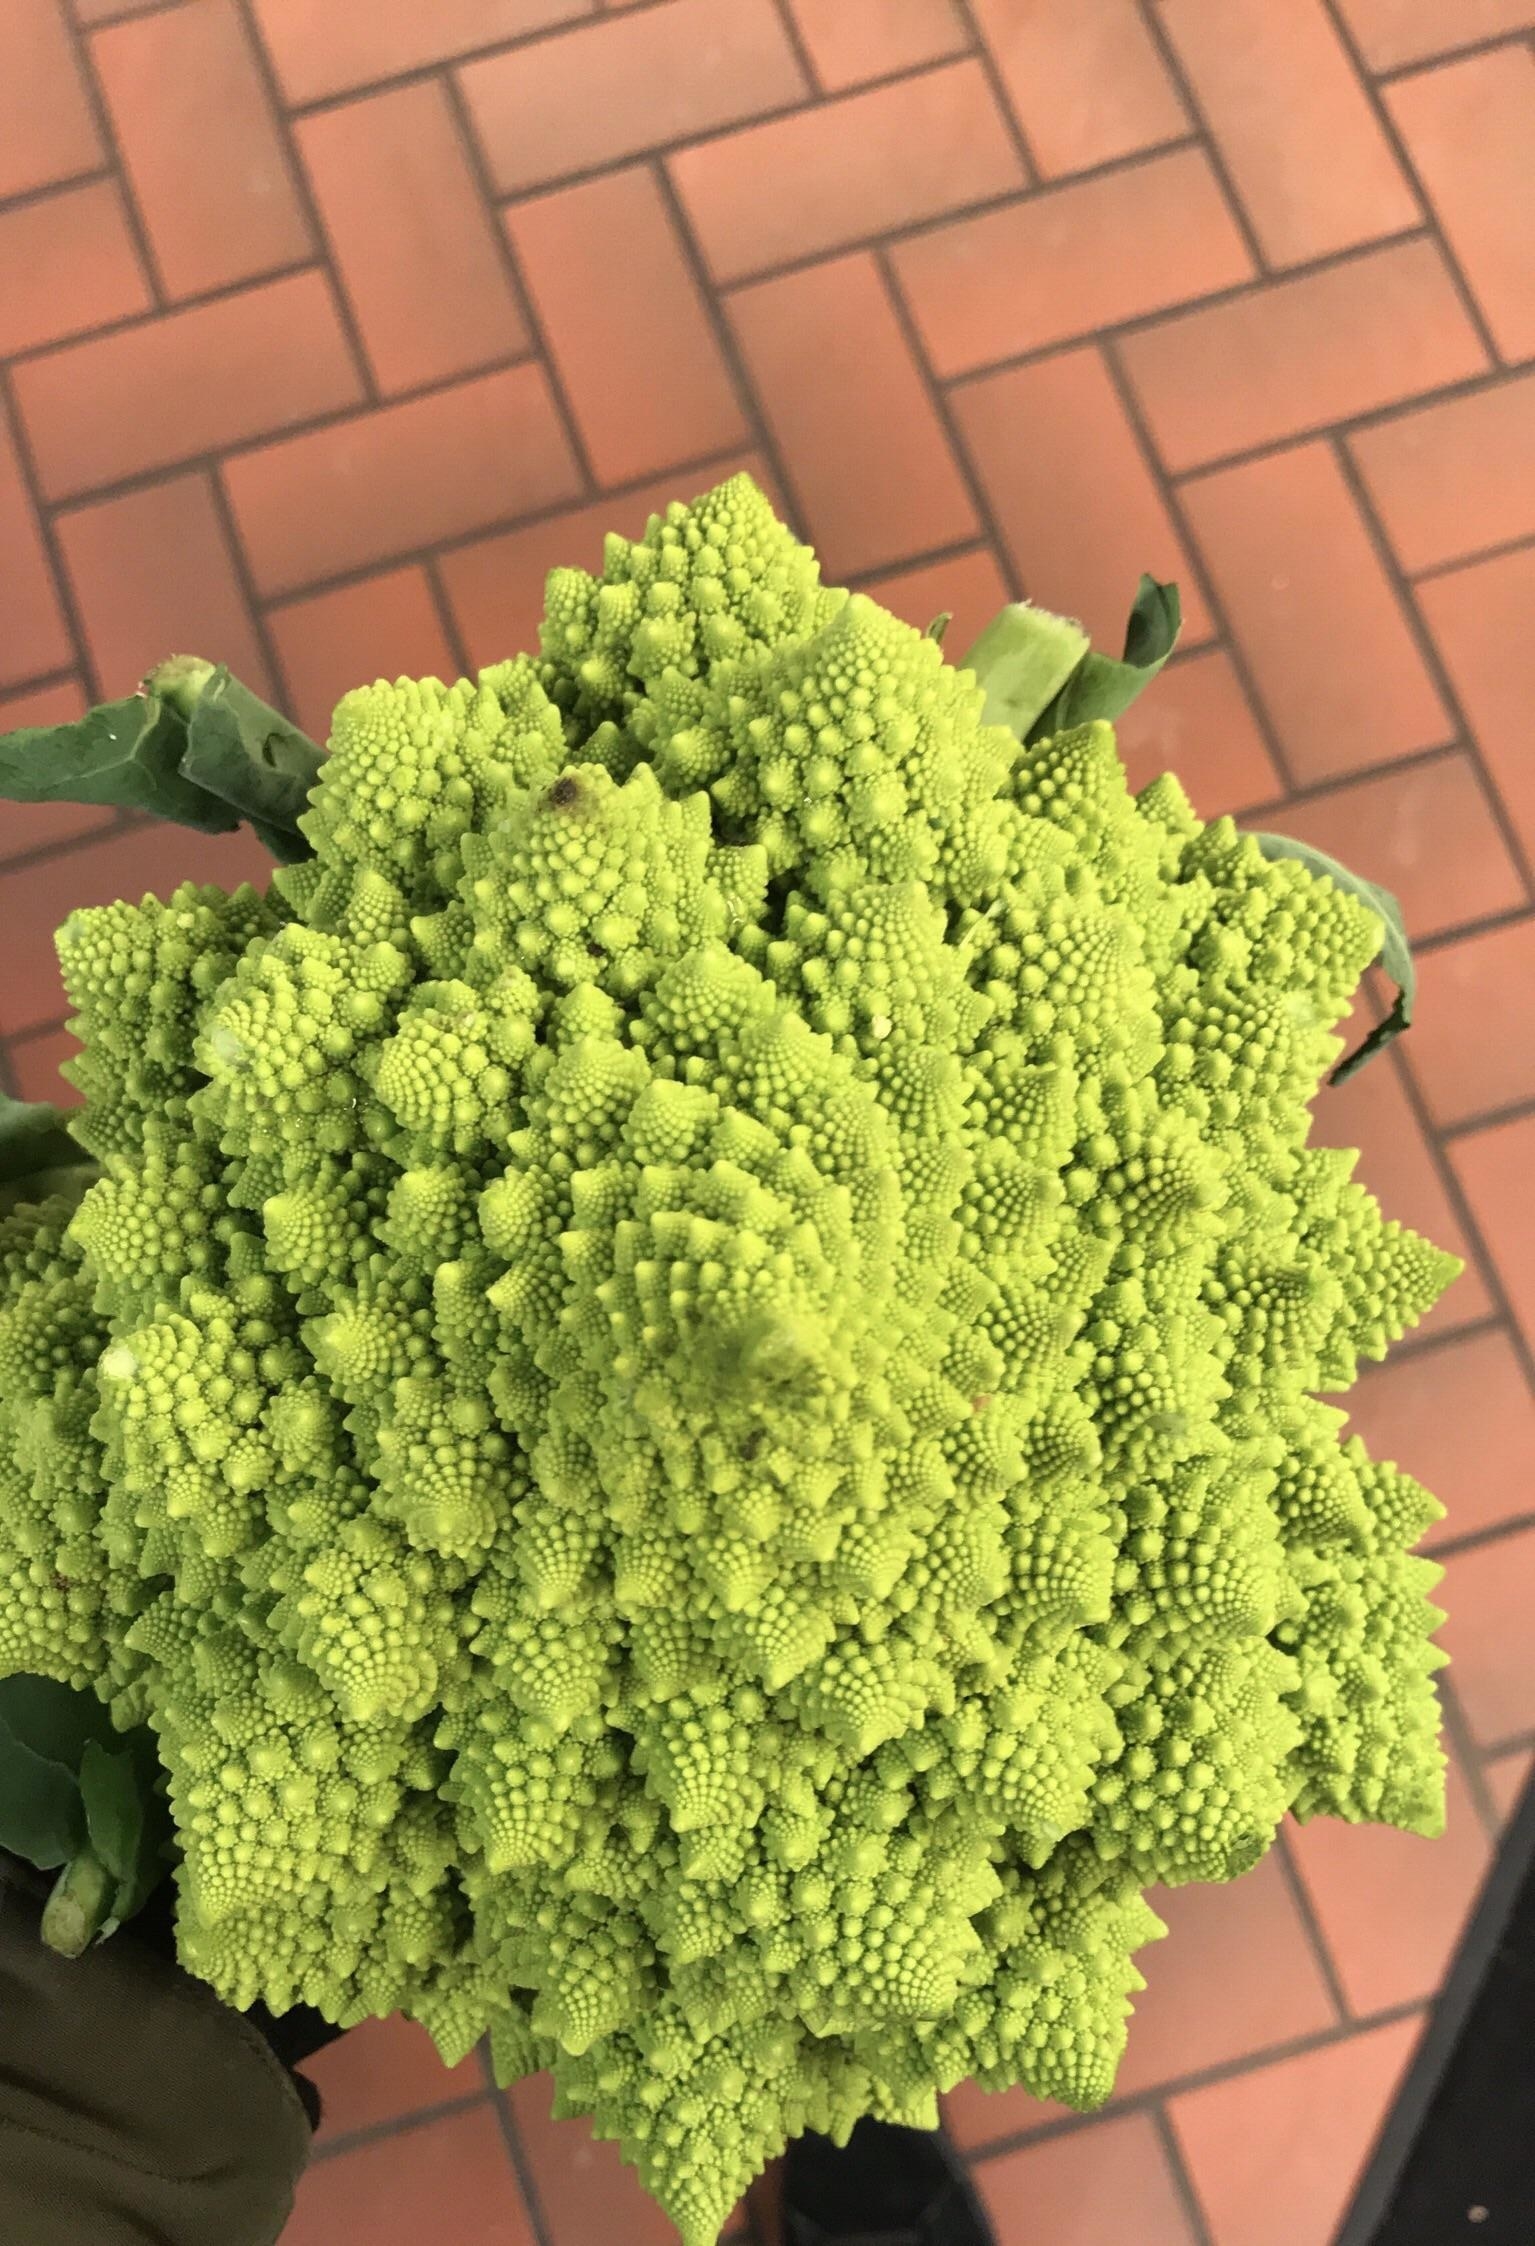 Romanesco broccoli in the shape of the Fibonacci sequence